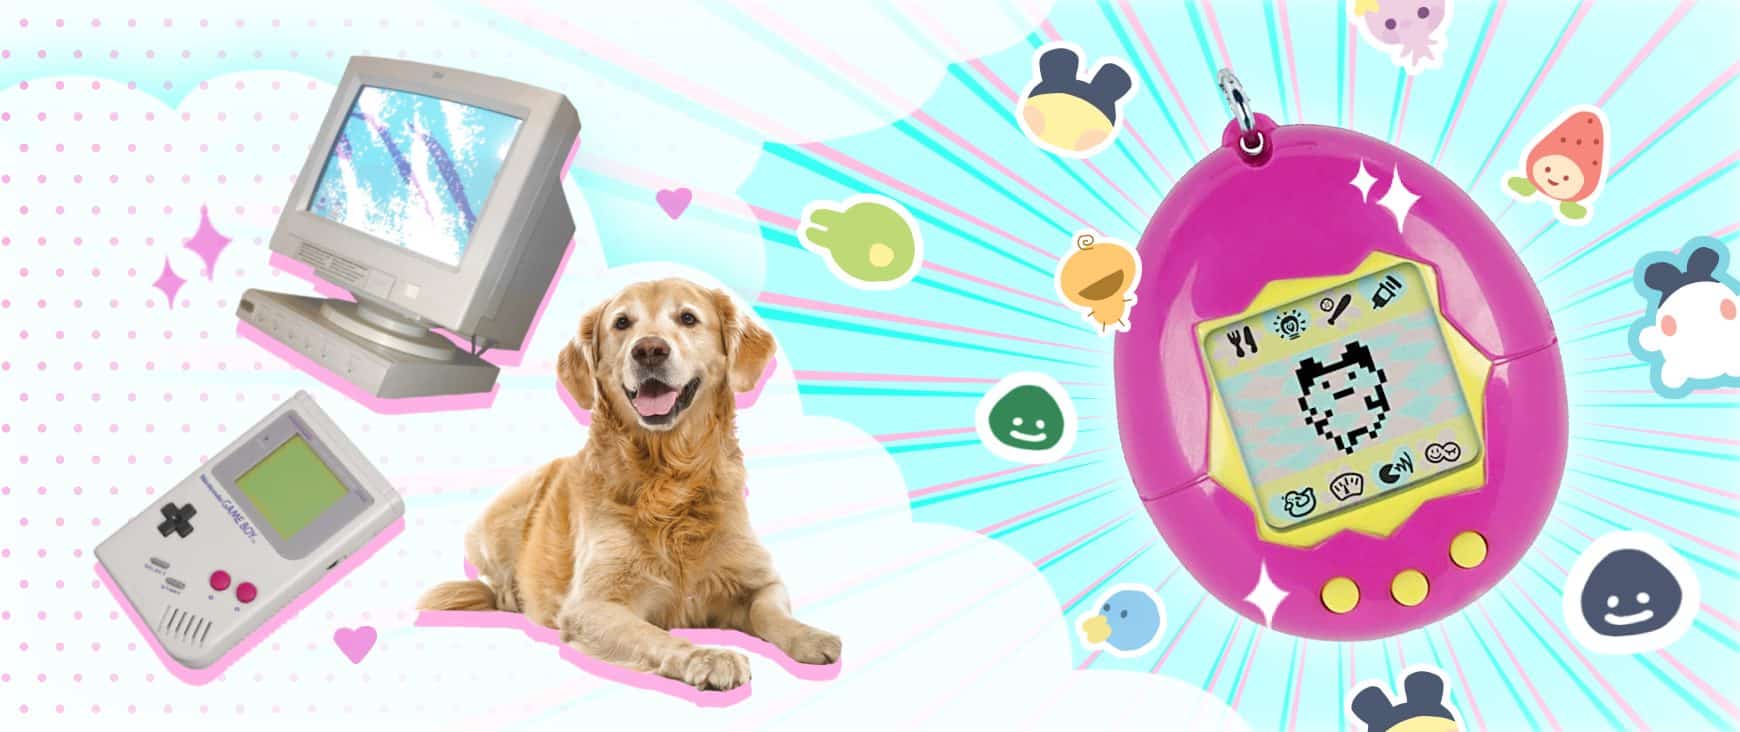 Tamagotchi the virtual pet game